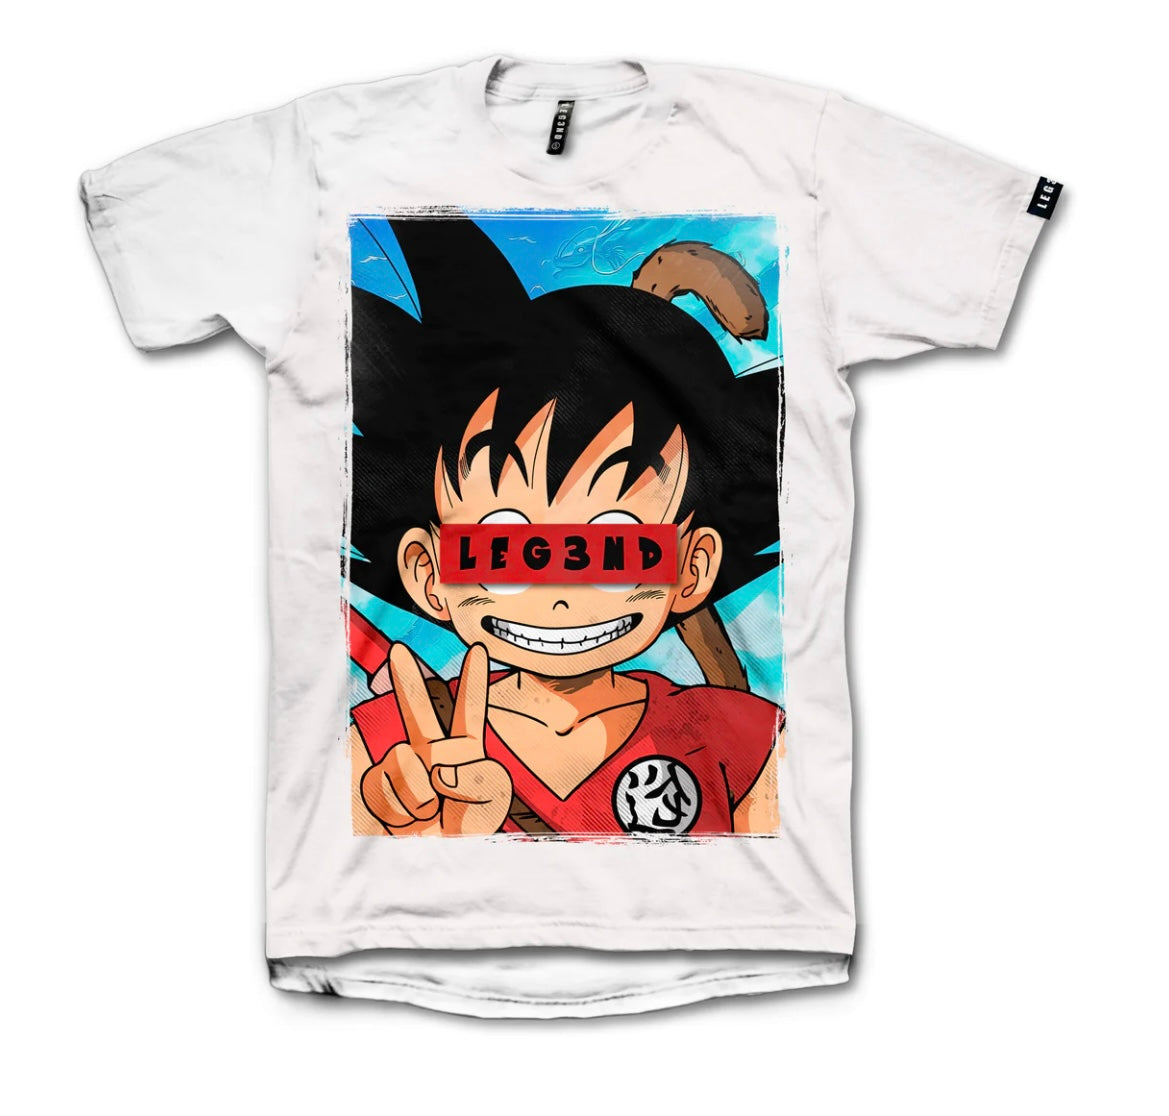 Camiseta Leg3nd- Goku